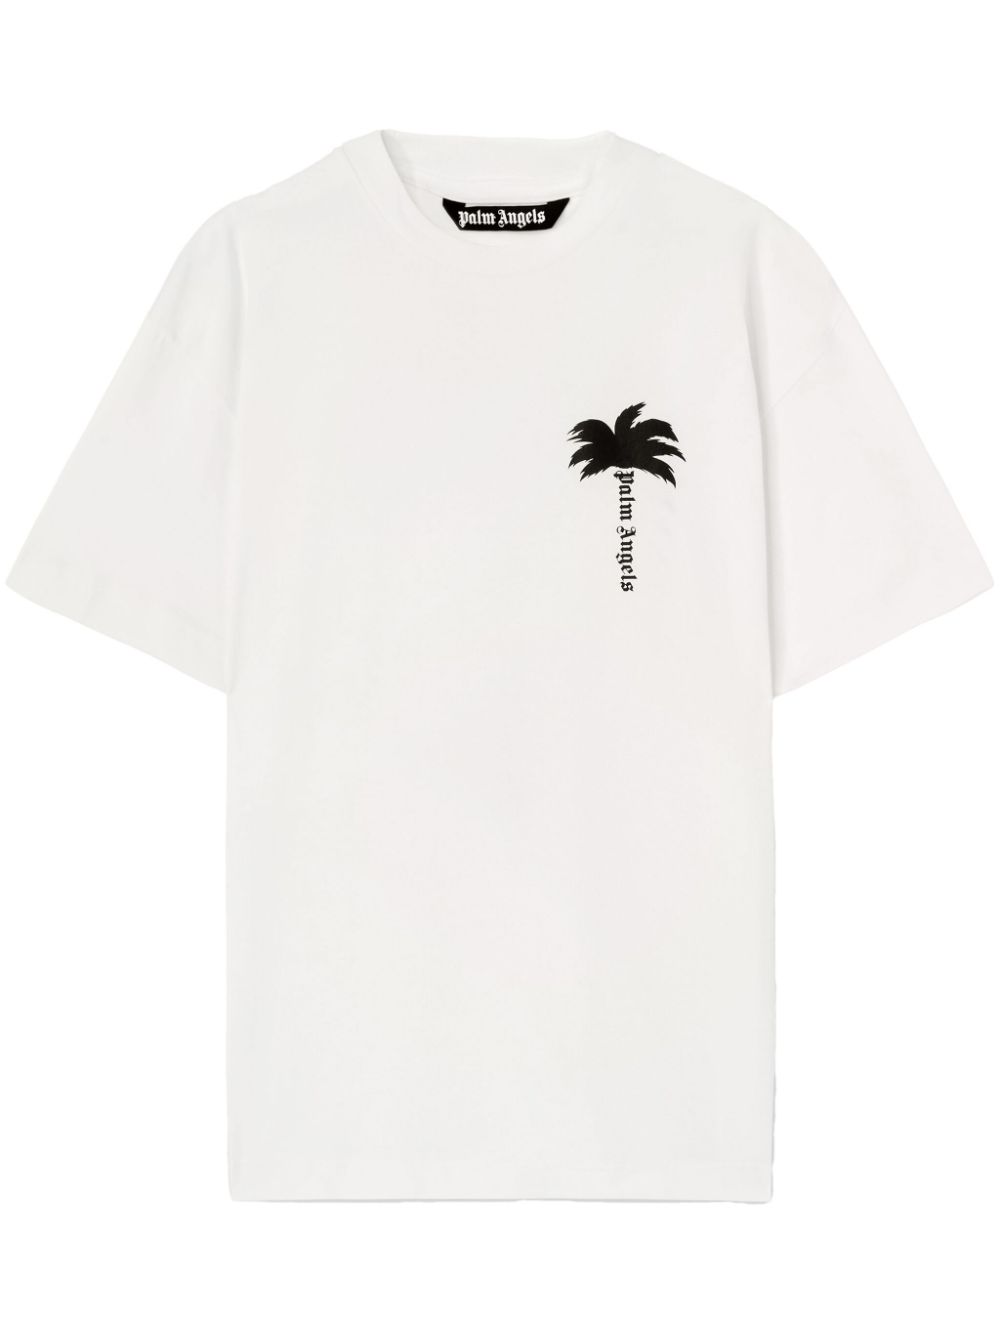 The Palm cotton T-shirt